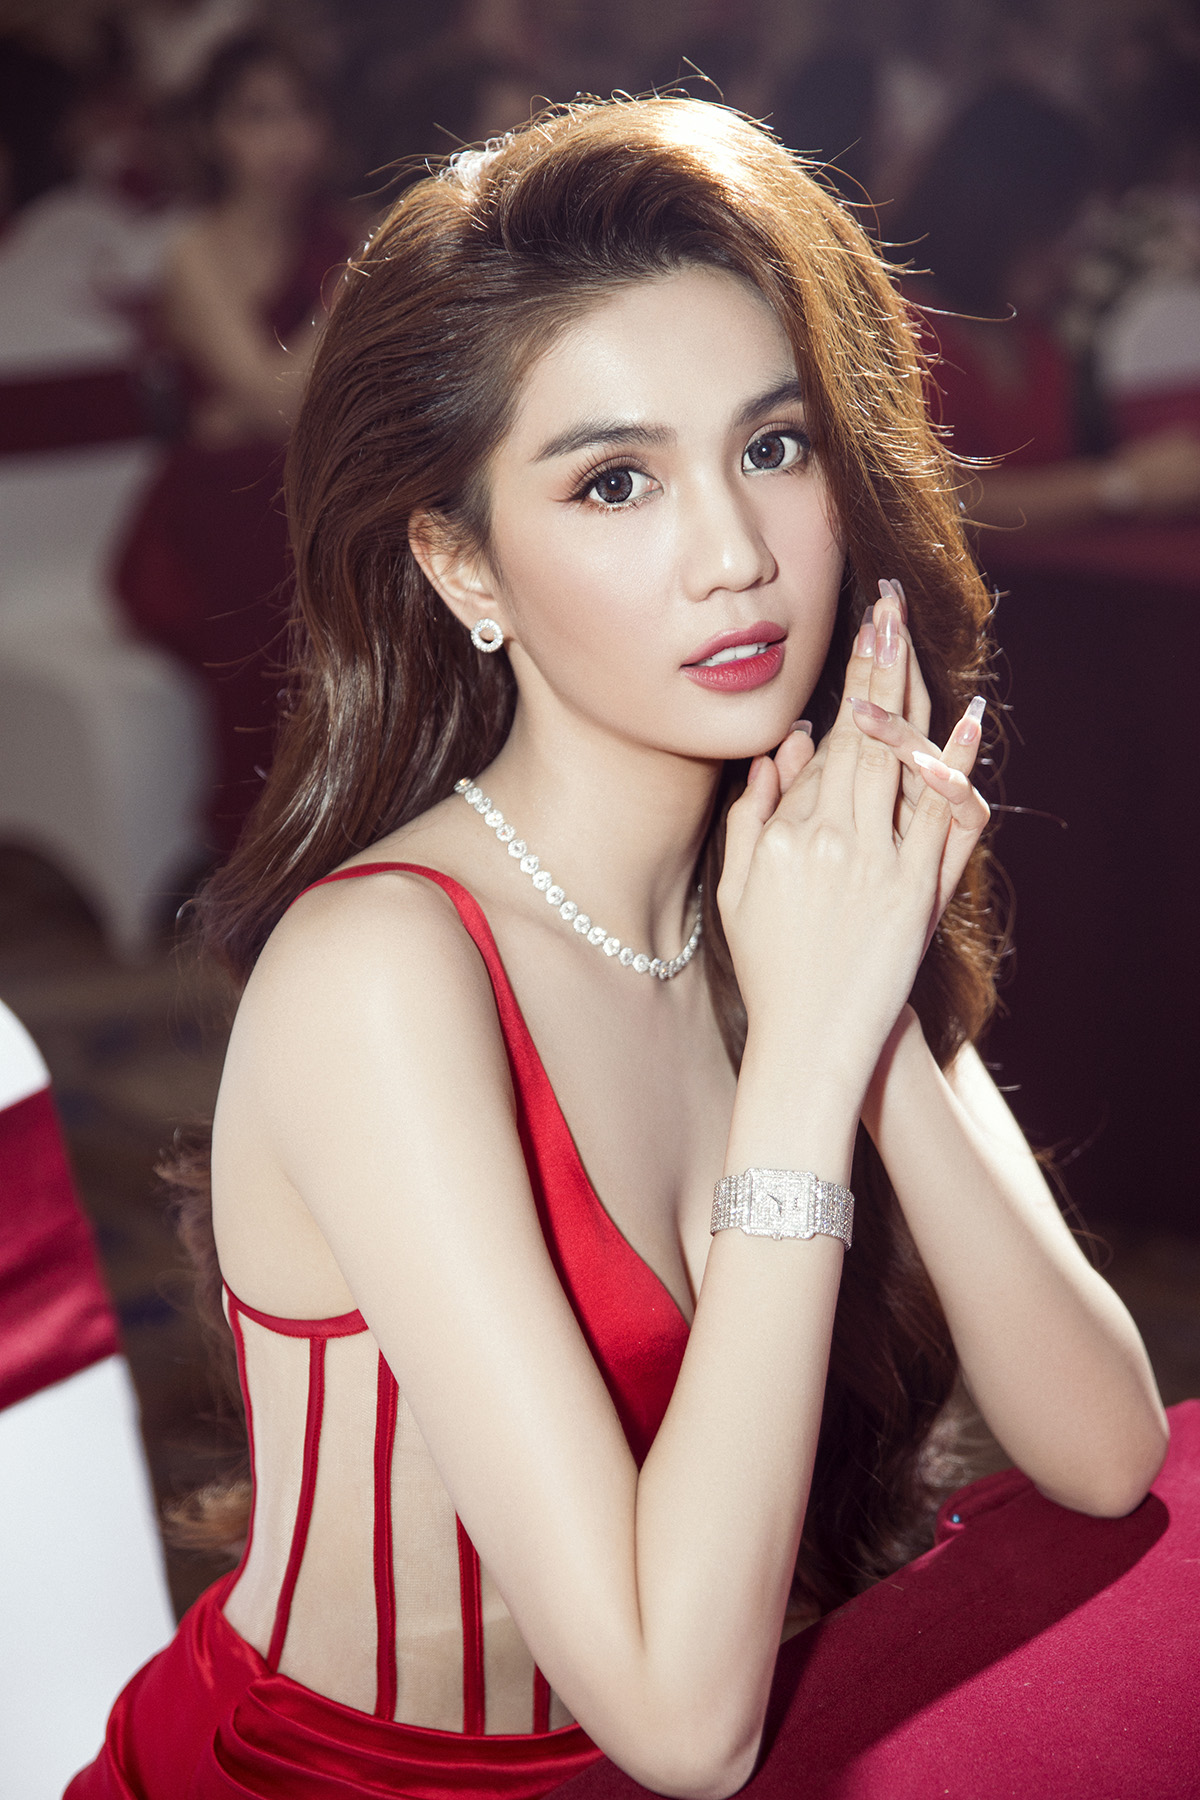 Hoa hậu Hương Giang trở thành Tân Đại sứ thương hiệu Diamond White của CEO Ngọc Trinh